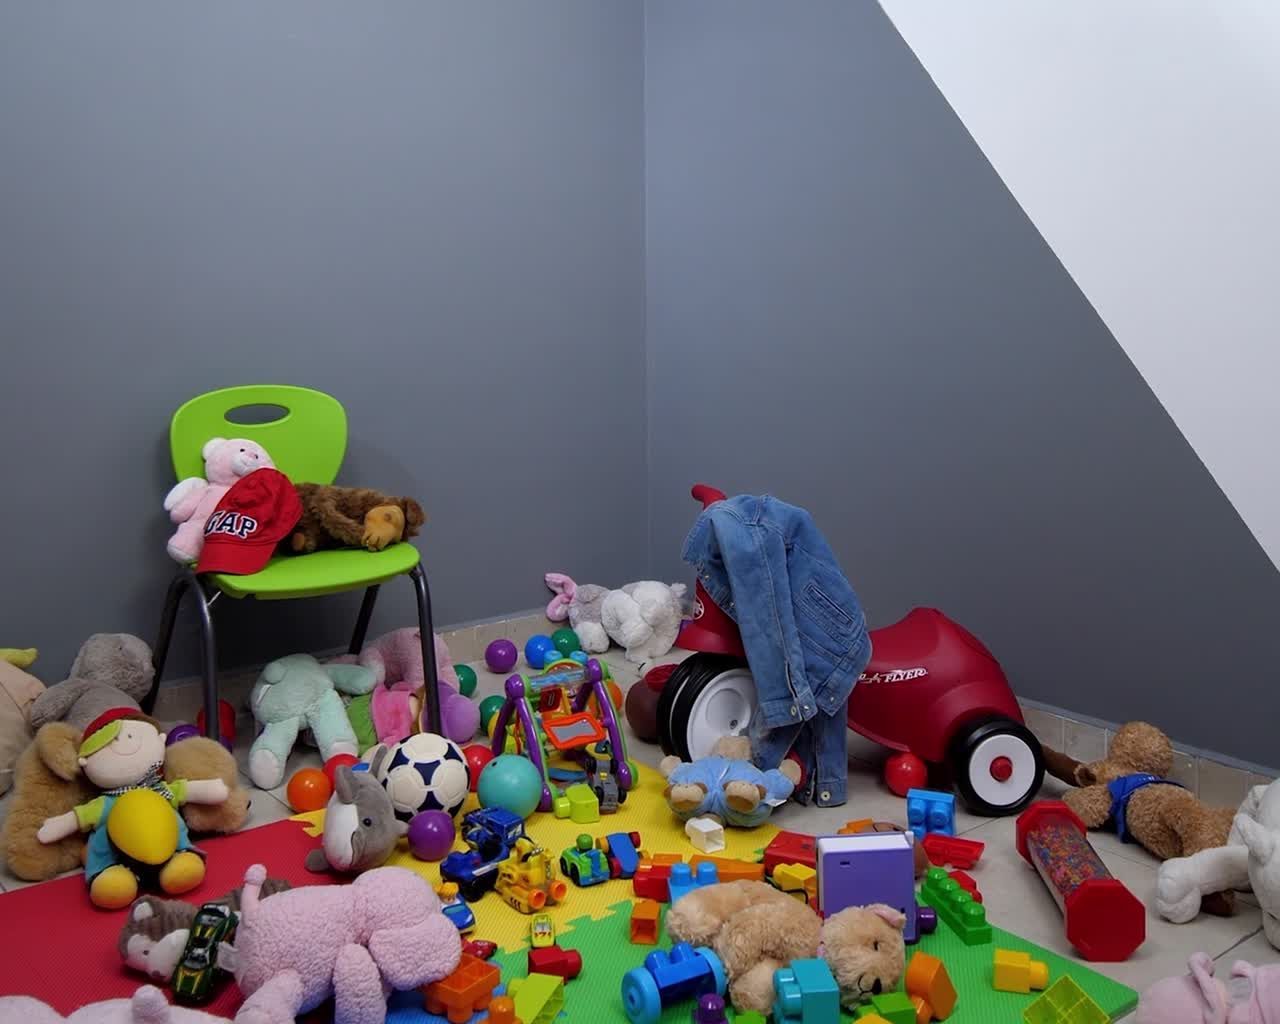 DIY Organiza y decora el cuarto de ni?os - DIY Organiza y decora el cuarto de ni?os -   diy Muebles infantiles